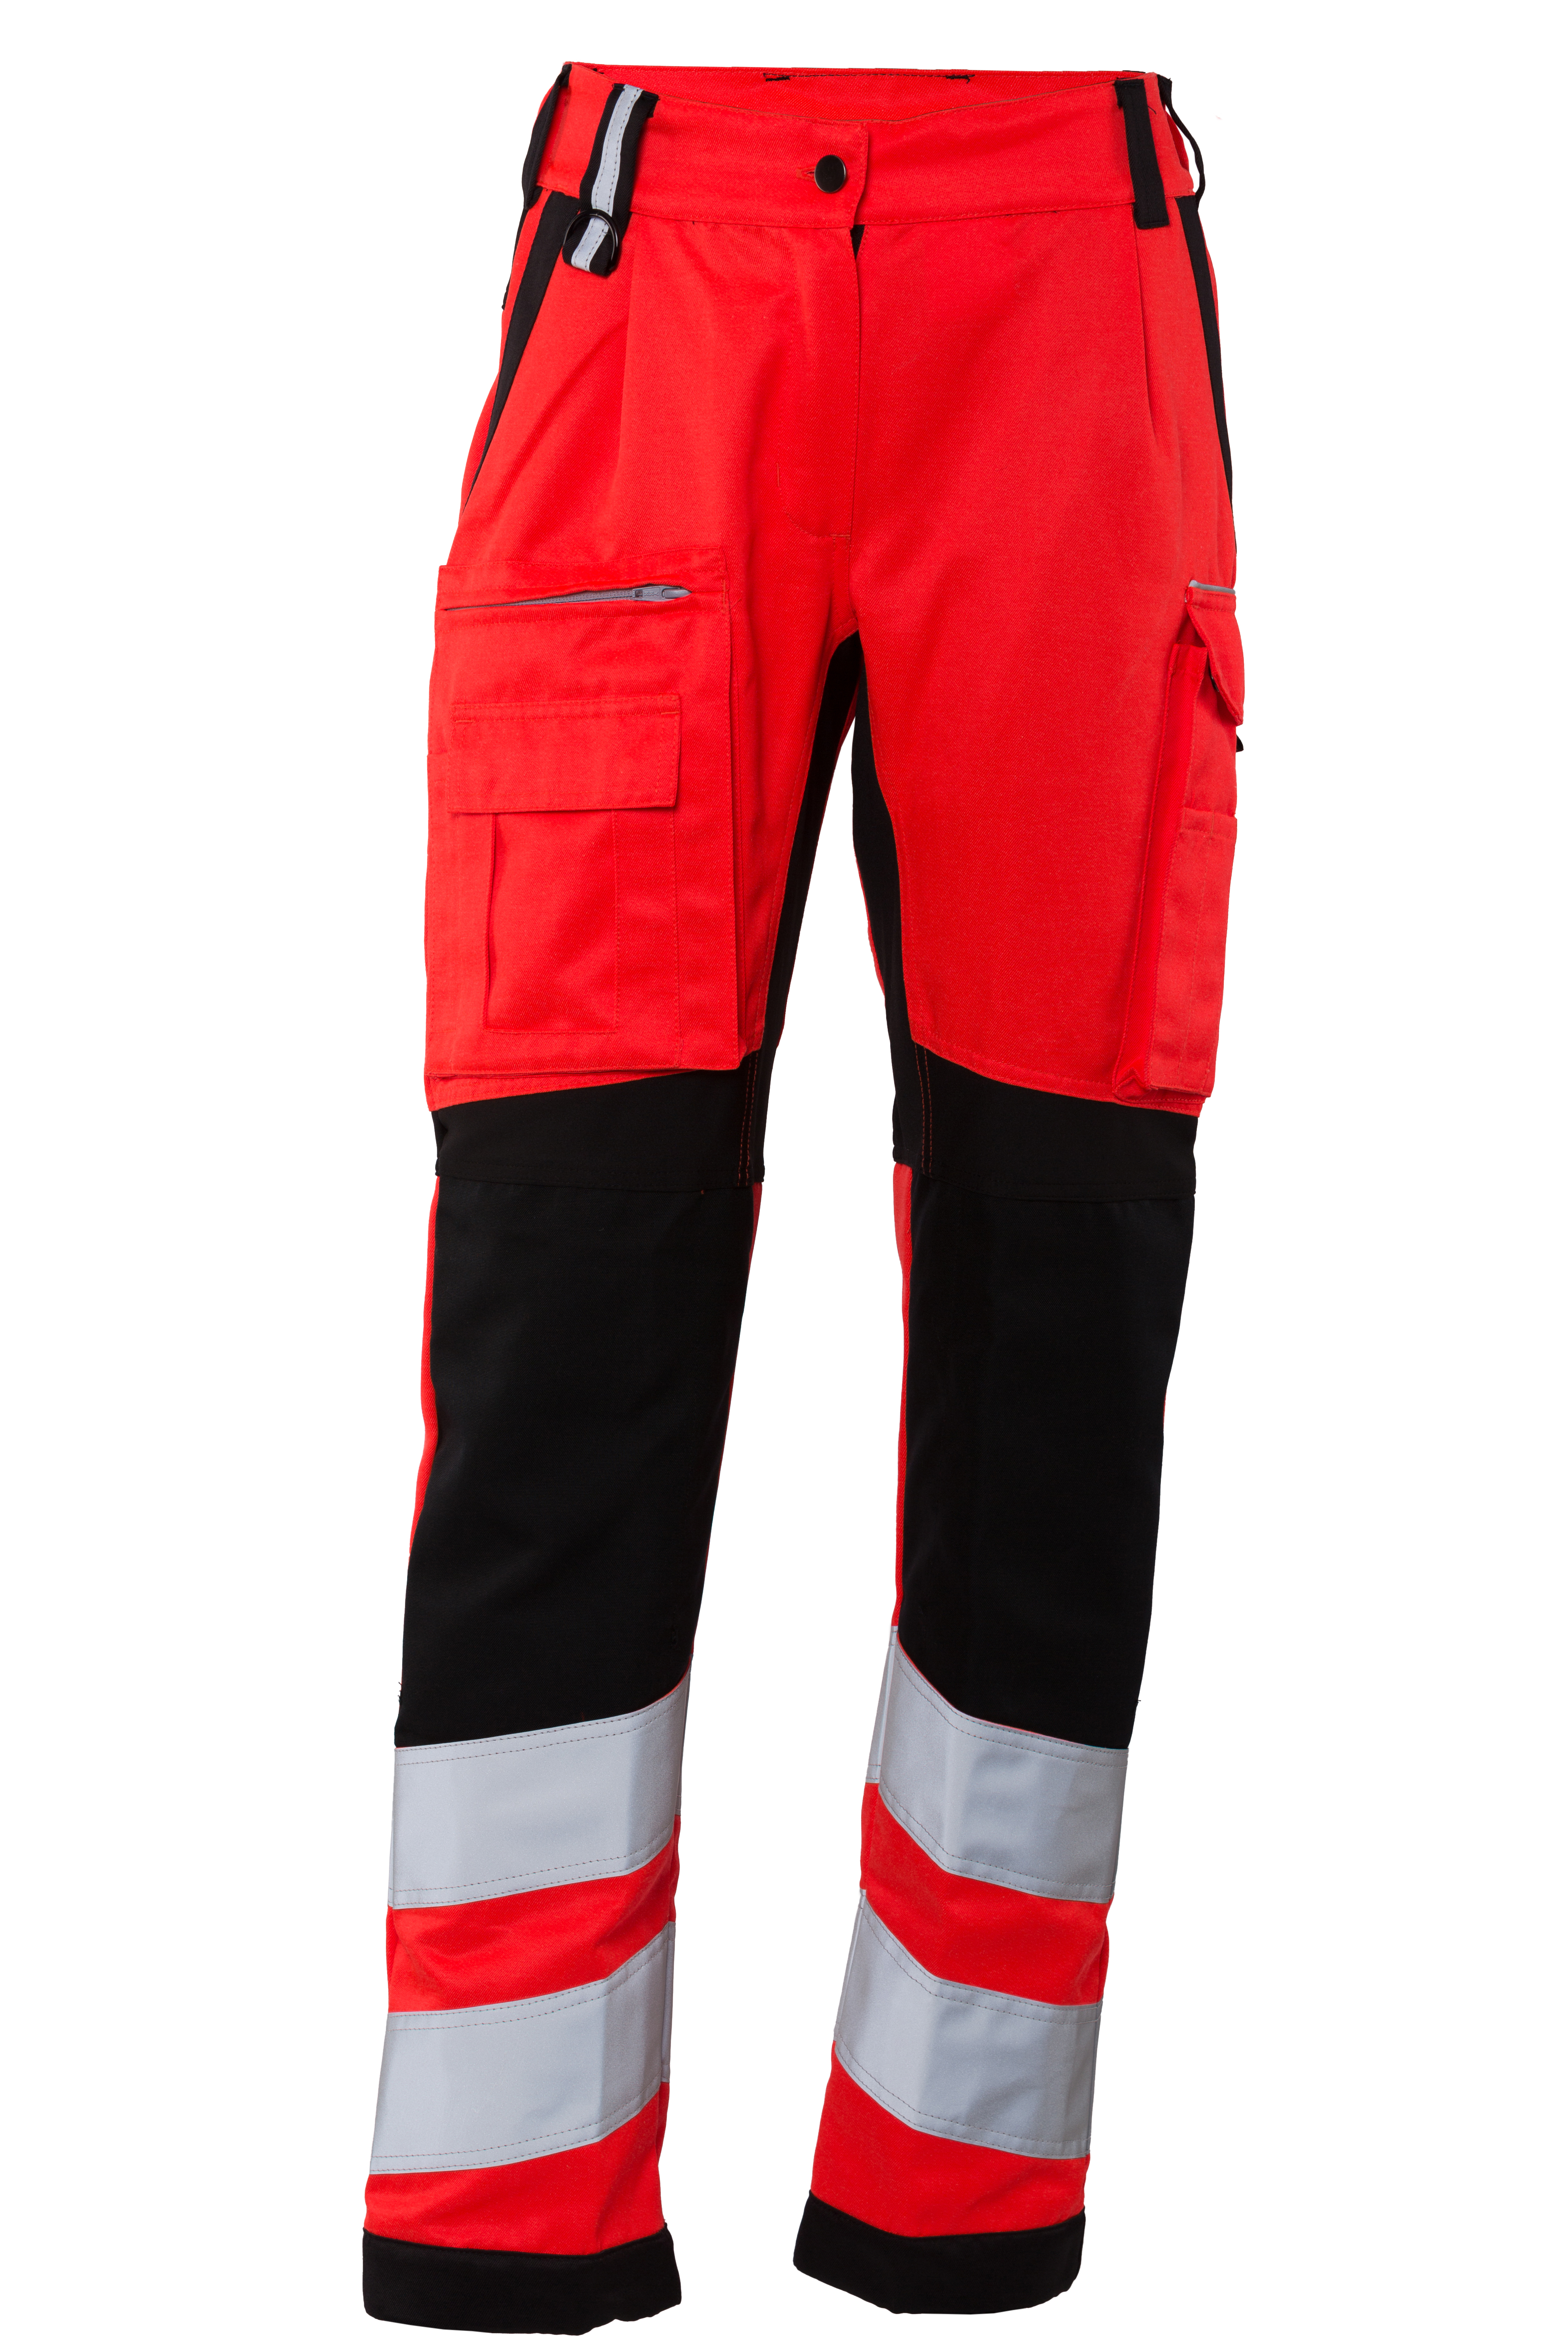 Rescuewear Damen Hose Stretch HiVis Klasse 2 Neon Rot / Schwarz - 38